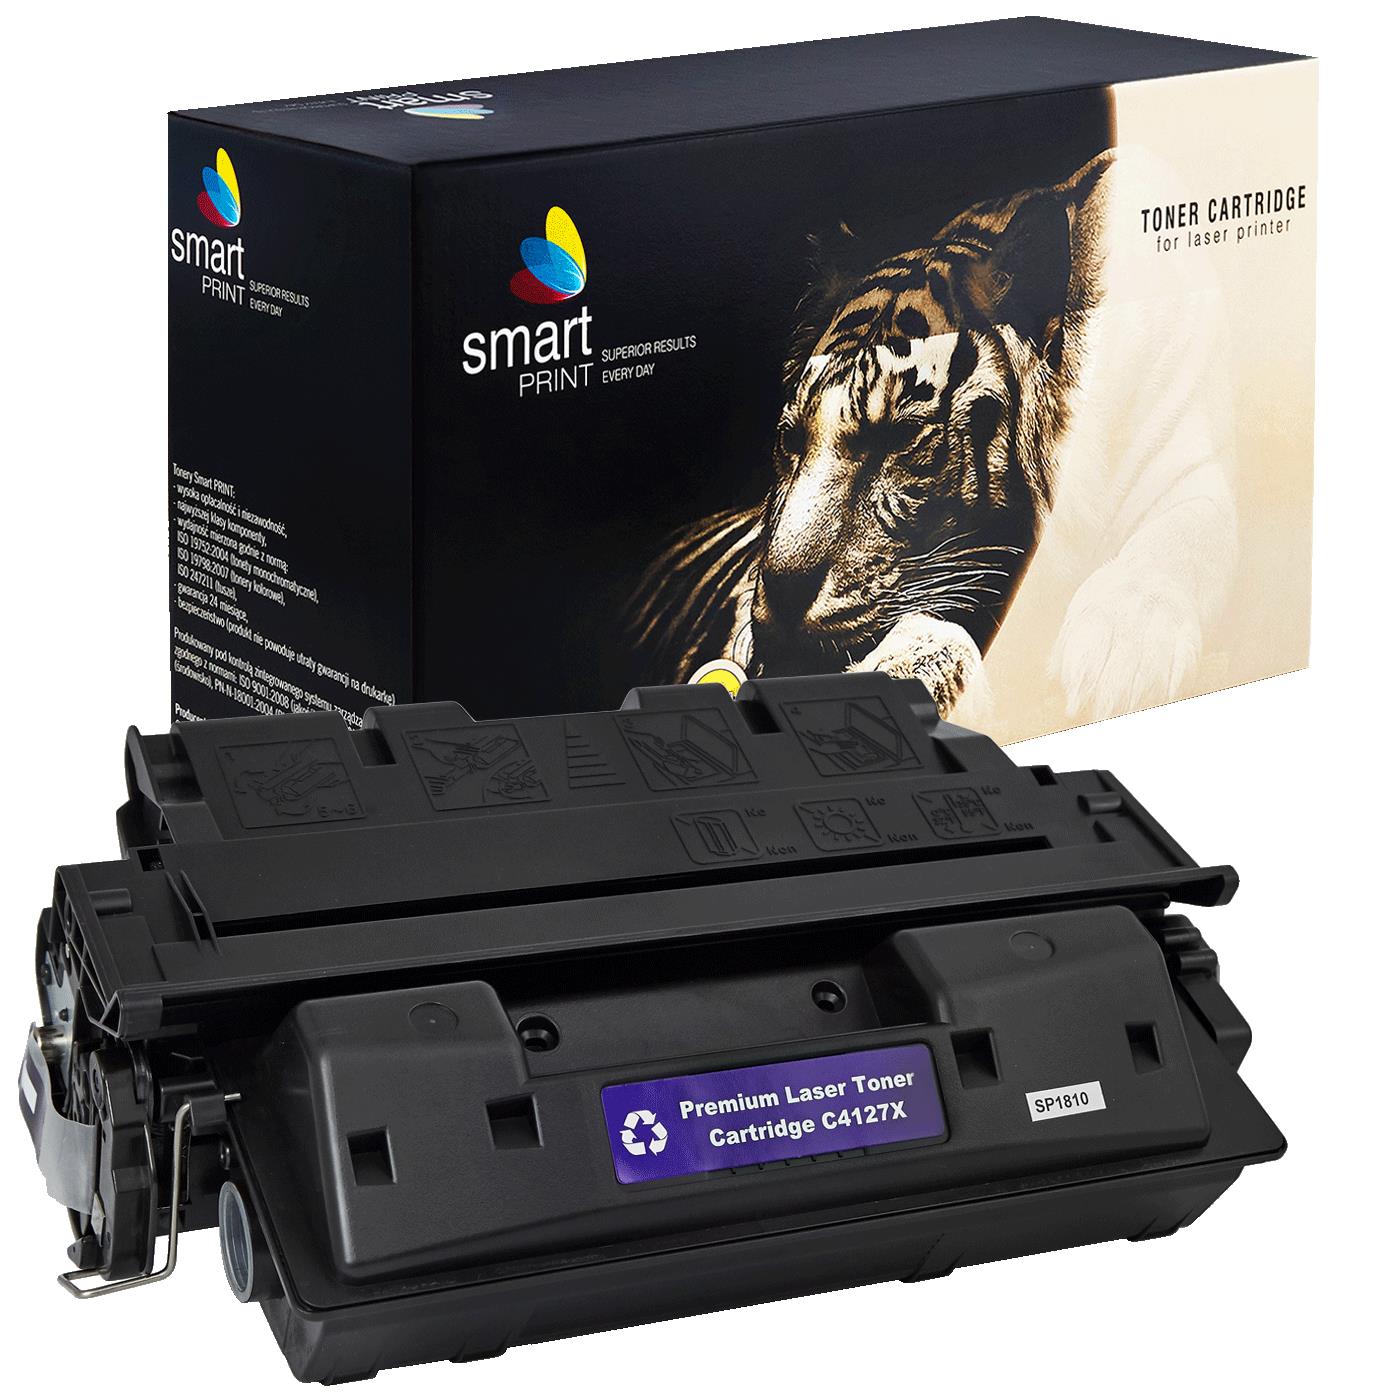 съвместима тонер касета за принтери и печатащи устройства на Hewlett Packard (HP) HP: LJ 4000, 4000N, 4000SE, 4000T, 4000TN, 4050, 4050N, v 4050SE, 4050T, 4050TN,  LJ serii 4000, 4050,  new new Toner HP-27X | C4127X. Ниски цени, прецизно изпълнение, високо качество.